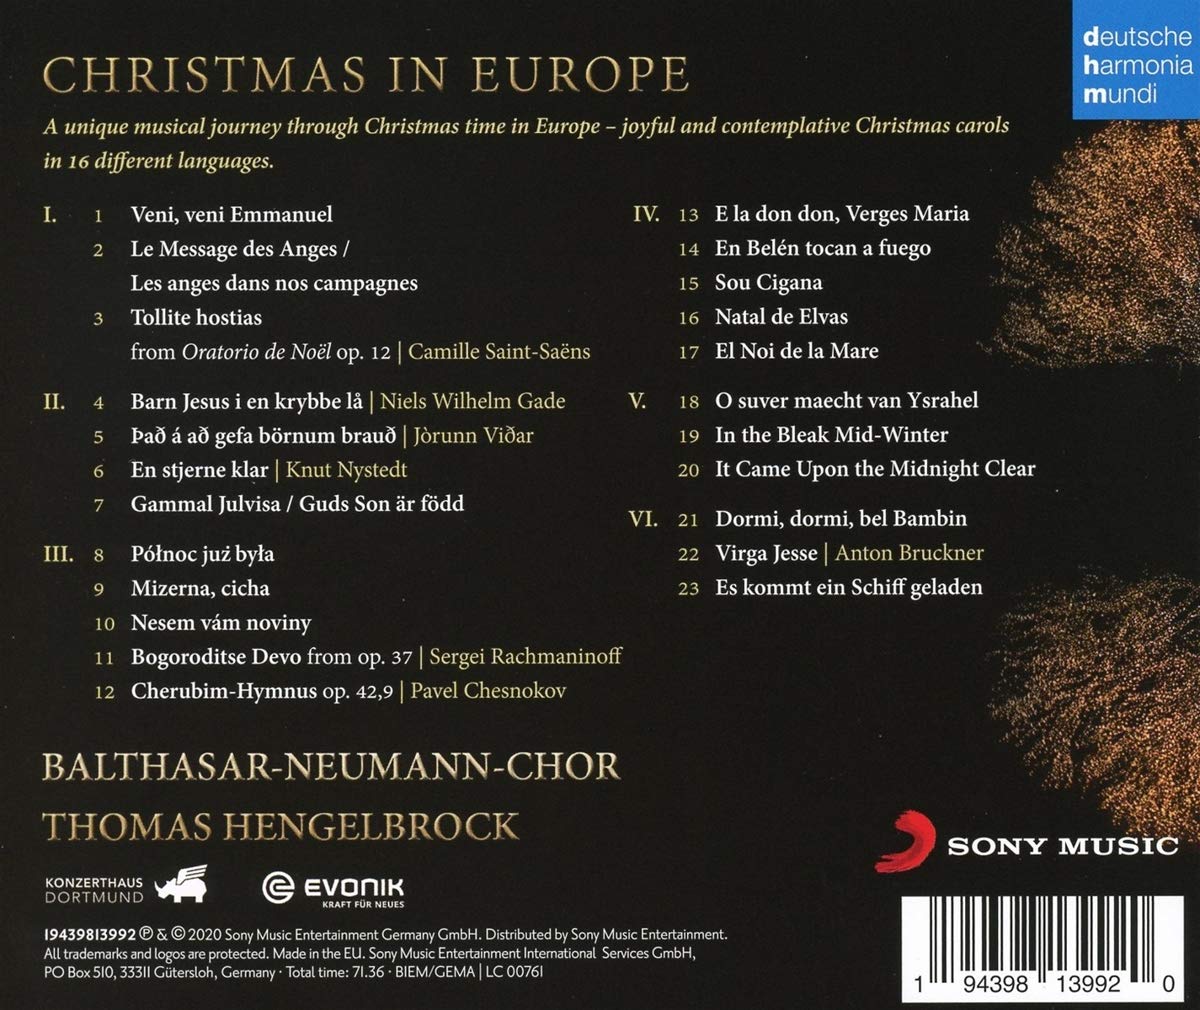 토마스 헹엘브록 / 발타자르 합창단: 유럽의 크리스마스 (Thomas Hengelbrock / Balthasar-Neumann-Chor: Christmas in Europe) 